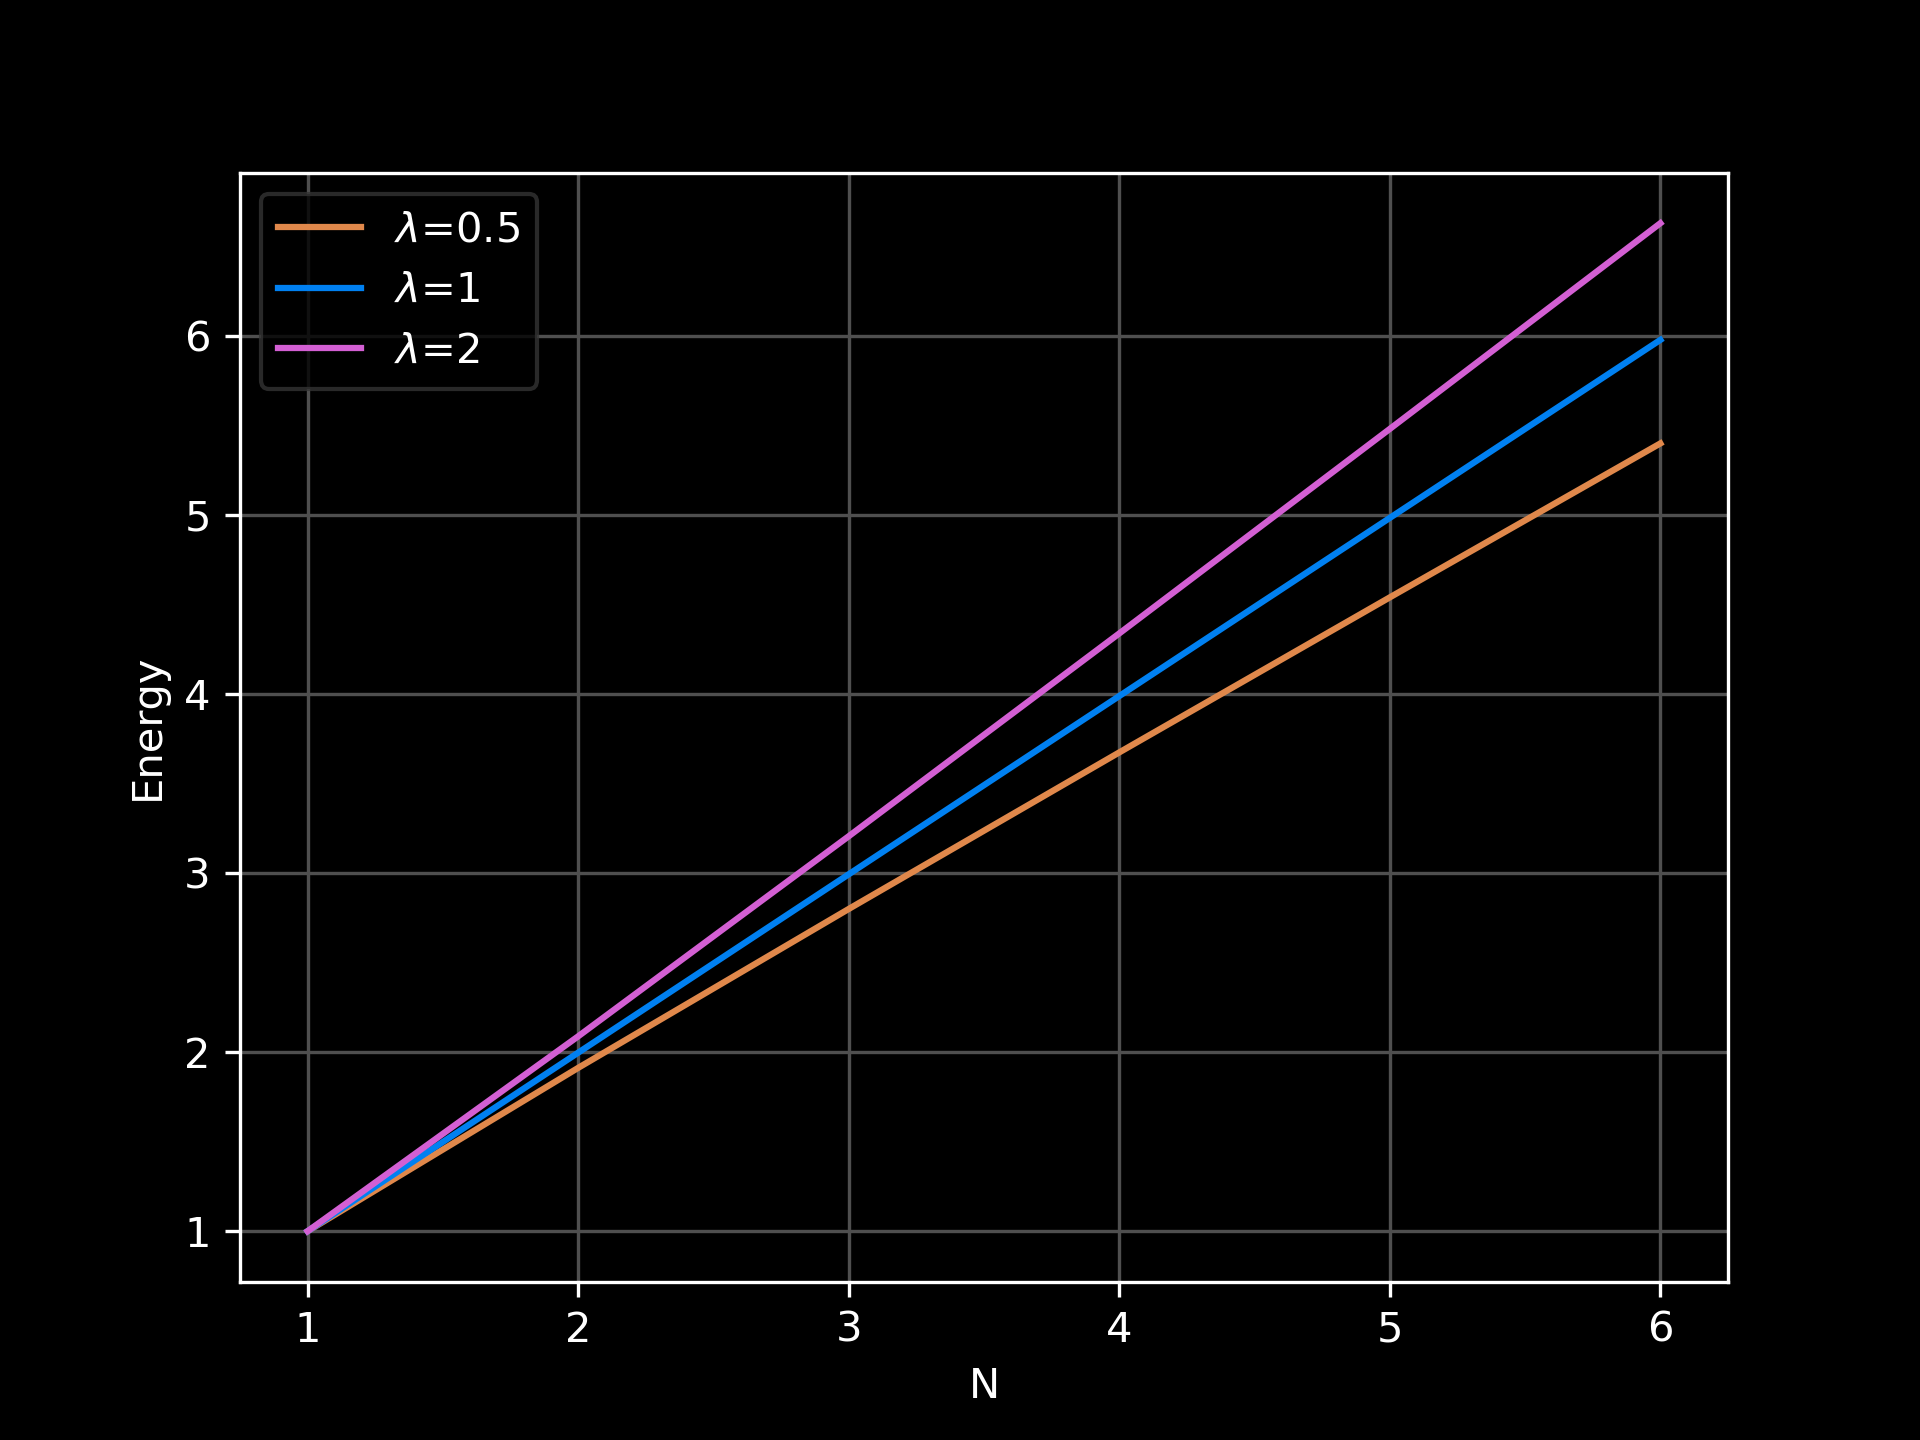 Energía de solciones obtenida numéricamente para N=1,2,3,4,5,6,7 y para los casos lambda=0.5,1,2.